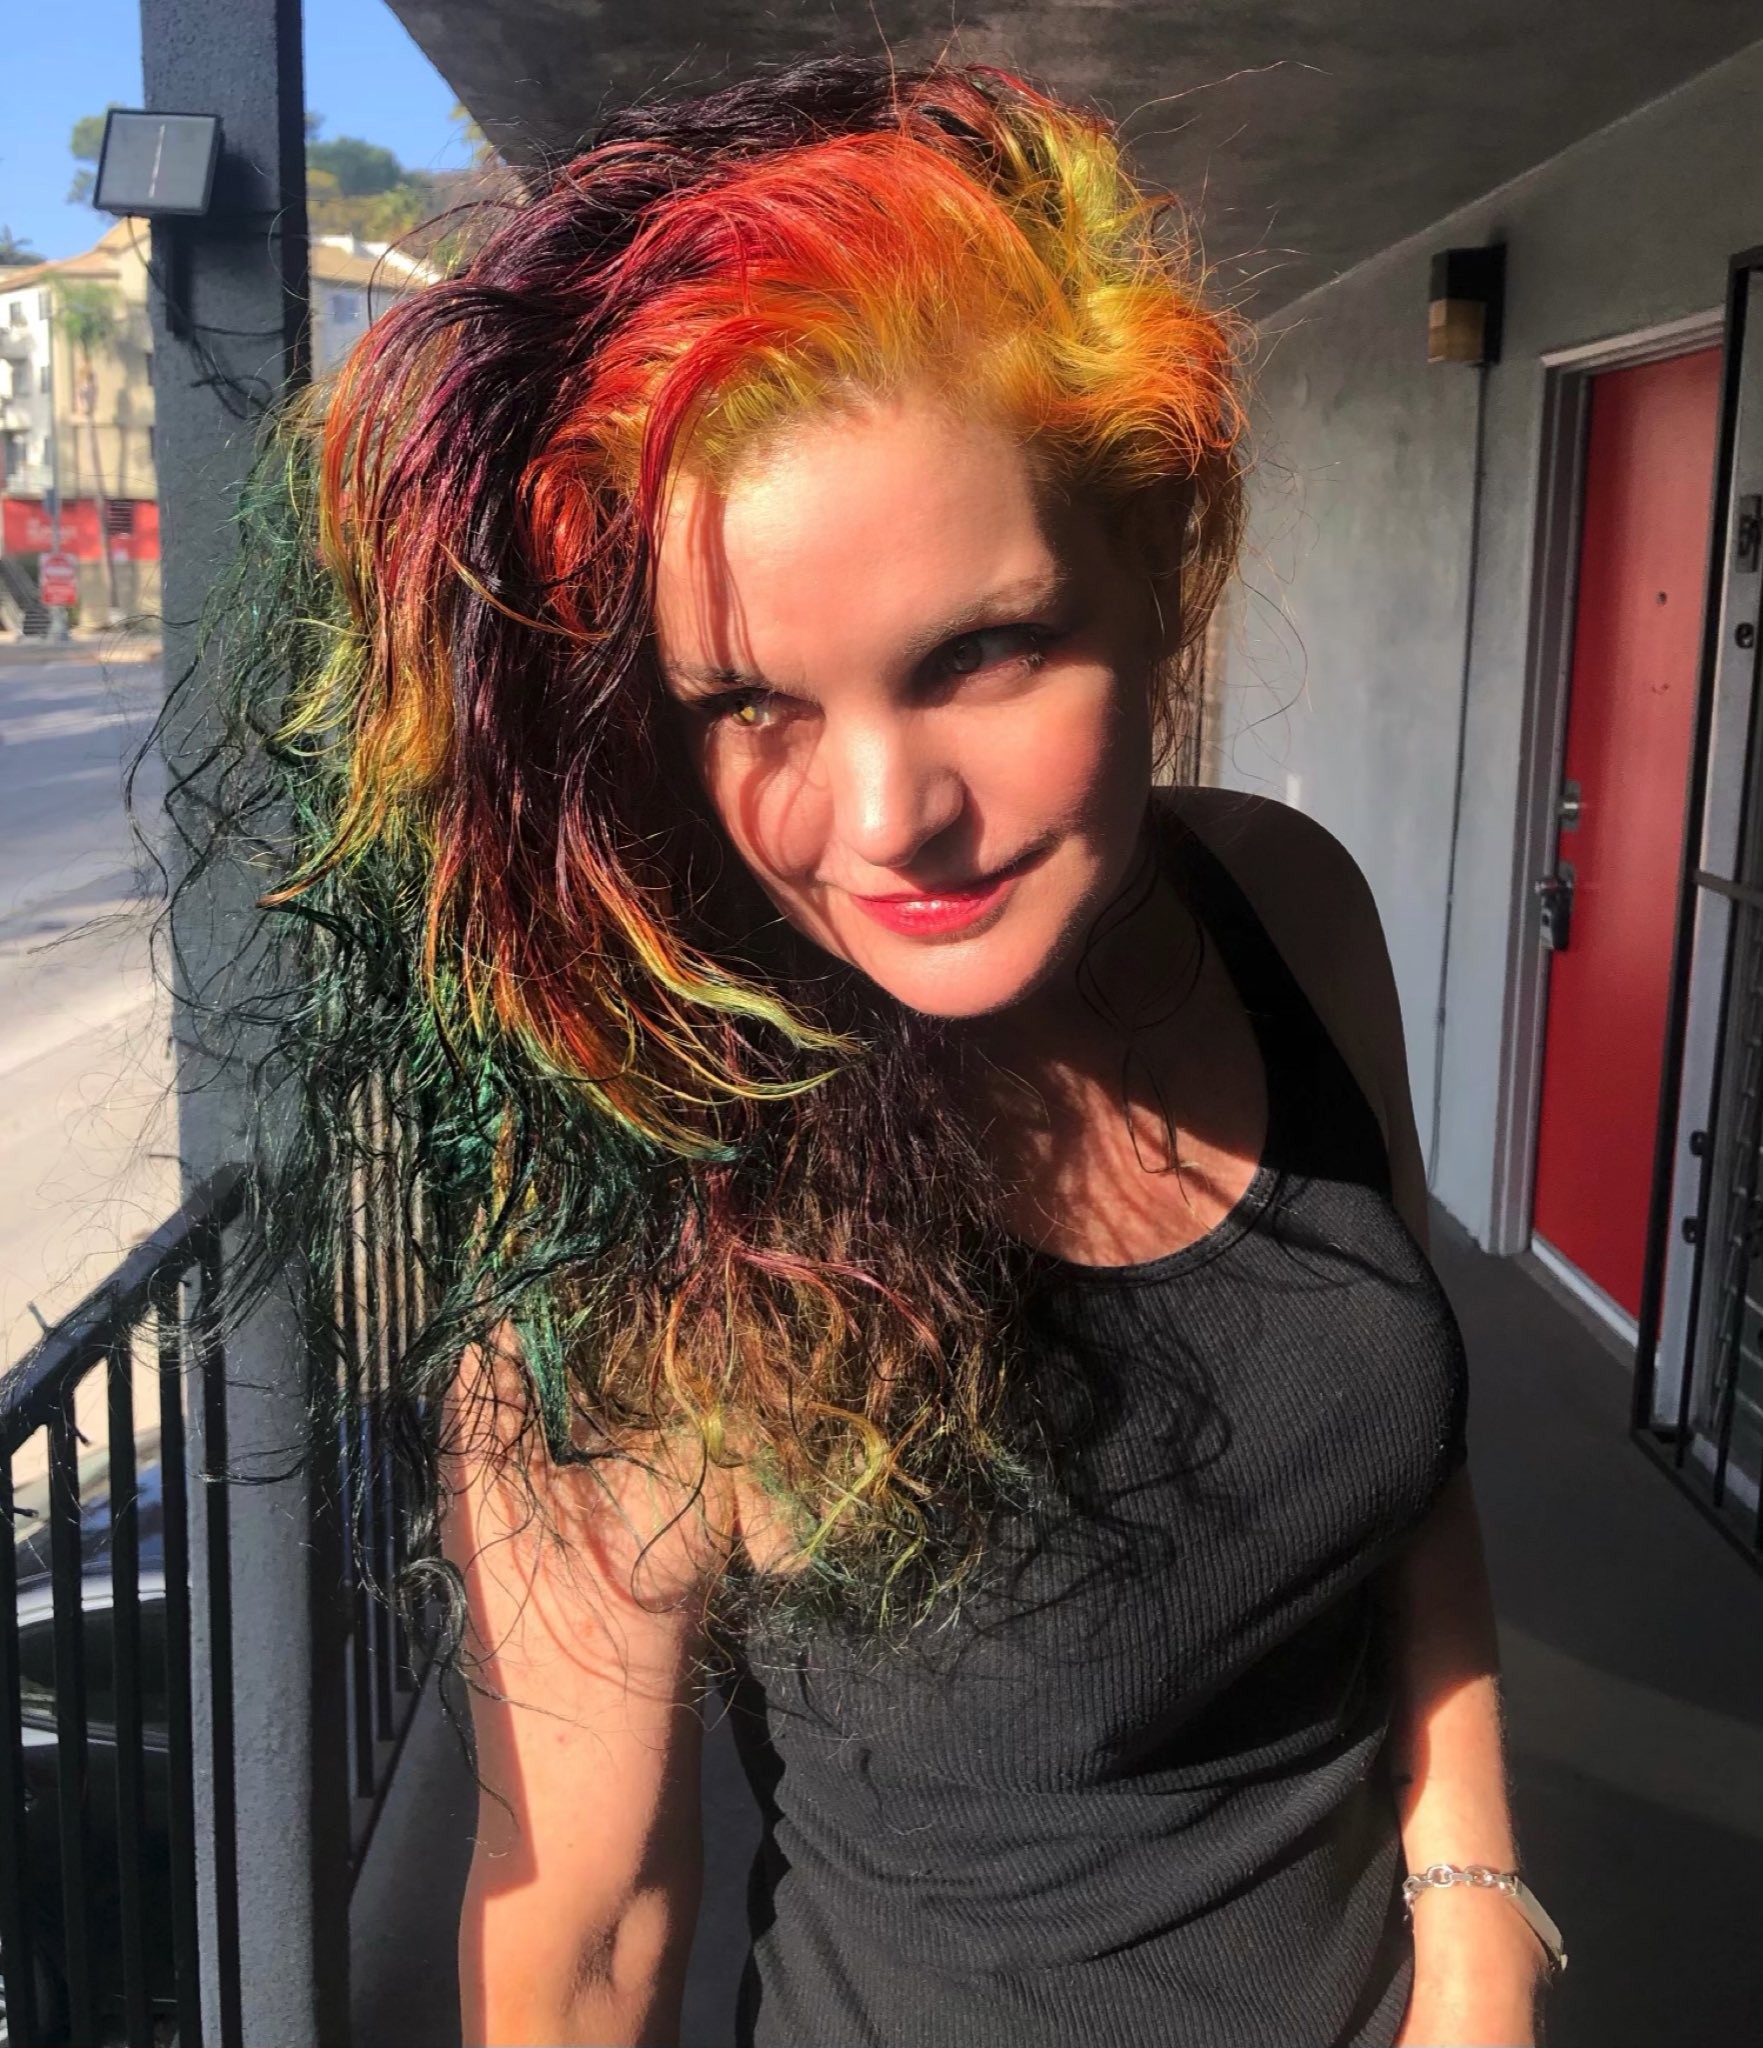 Pauley Perrette com seu novo cabelo colorido (Foto: Reprodução/Twitter)